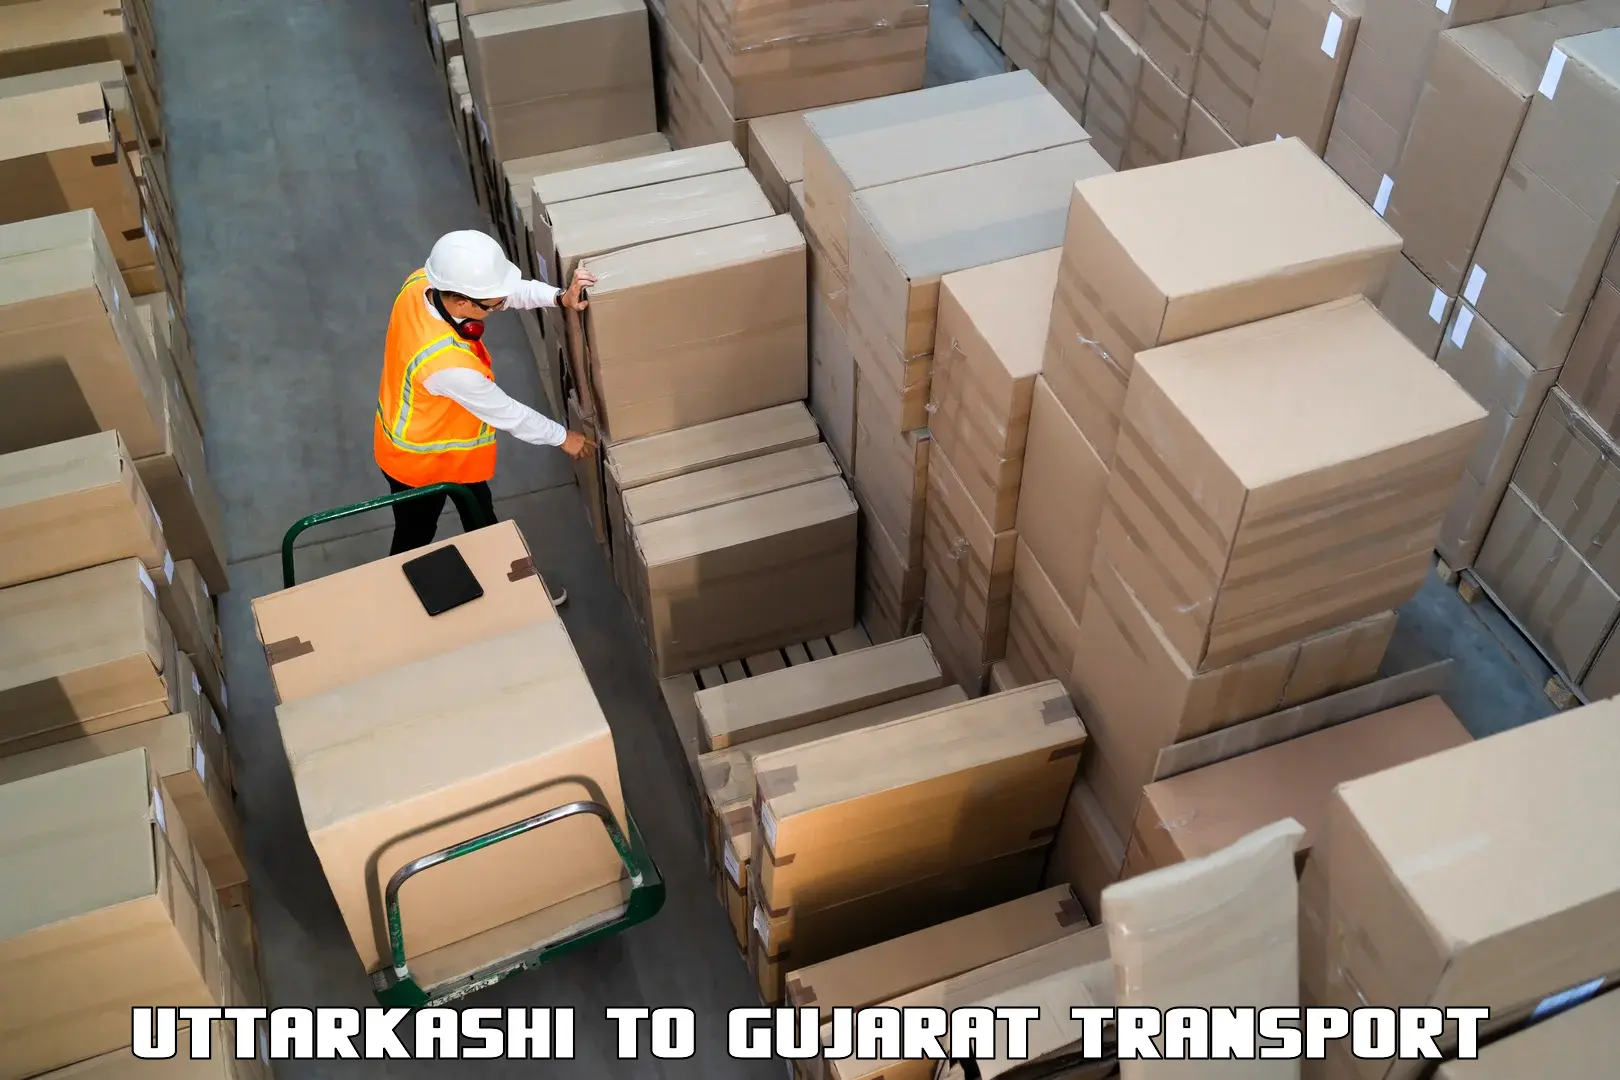 Nearby transport service Uttarkashi to Dayapar